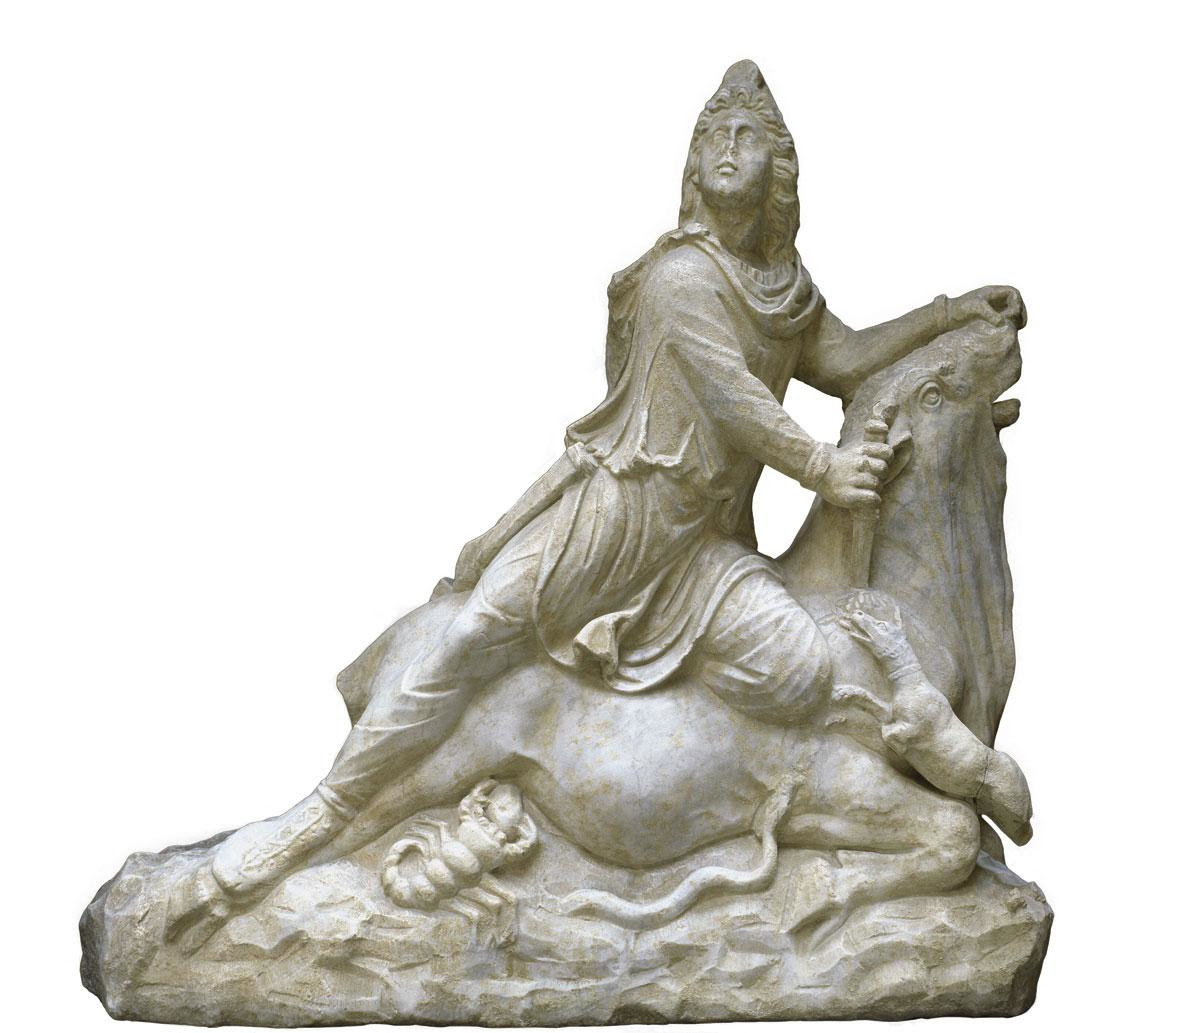 Le culte de Mithra s'est propagé dans tout l'Empire romain avant d'être éradiqué à la fin du IVe siècle., belga image